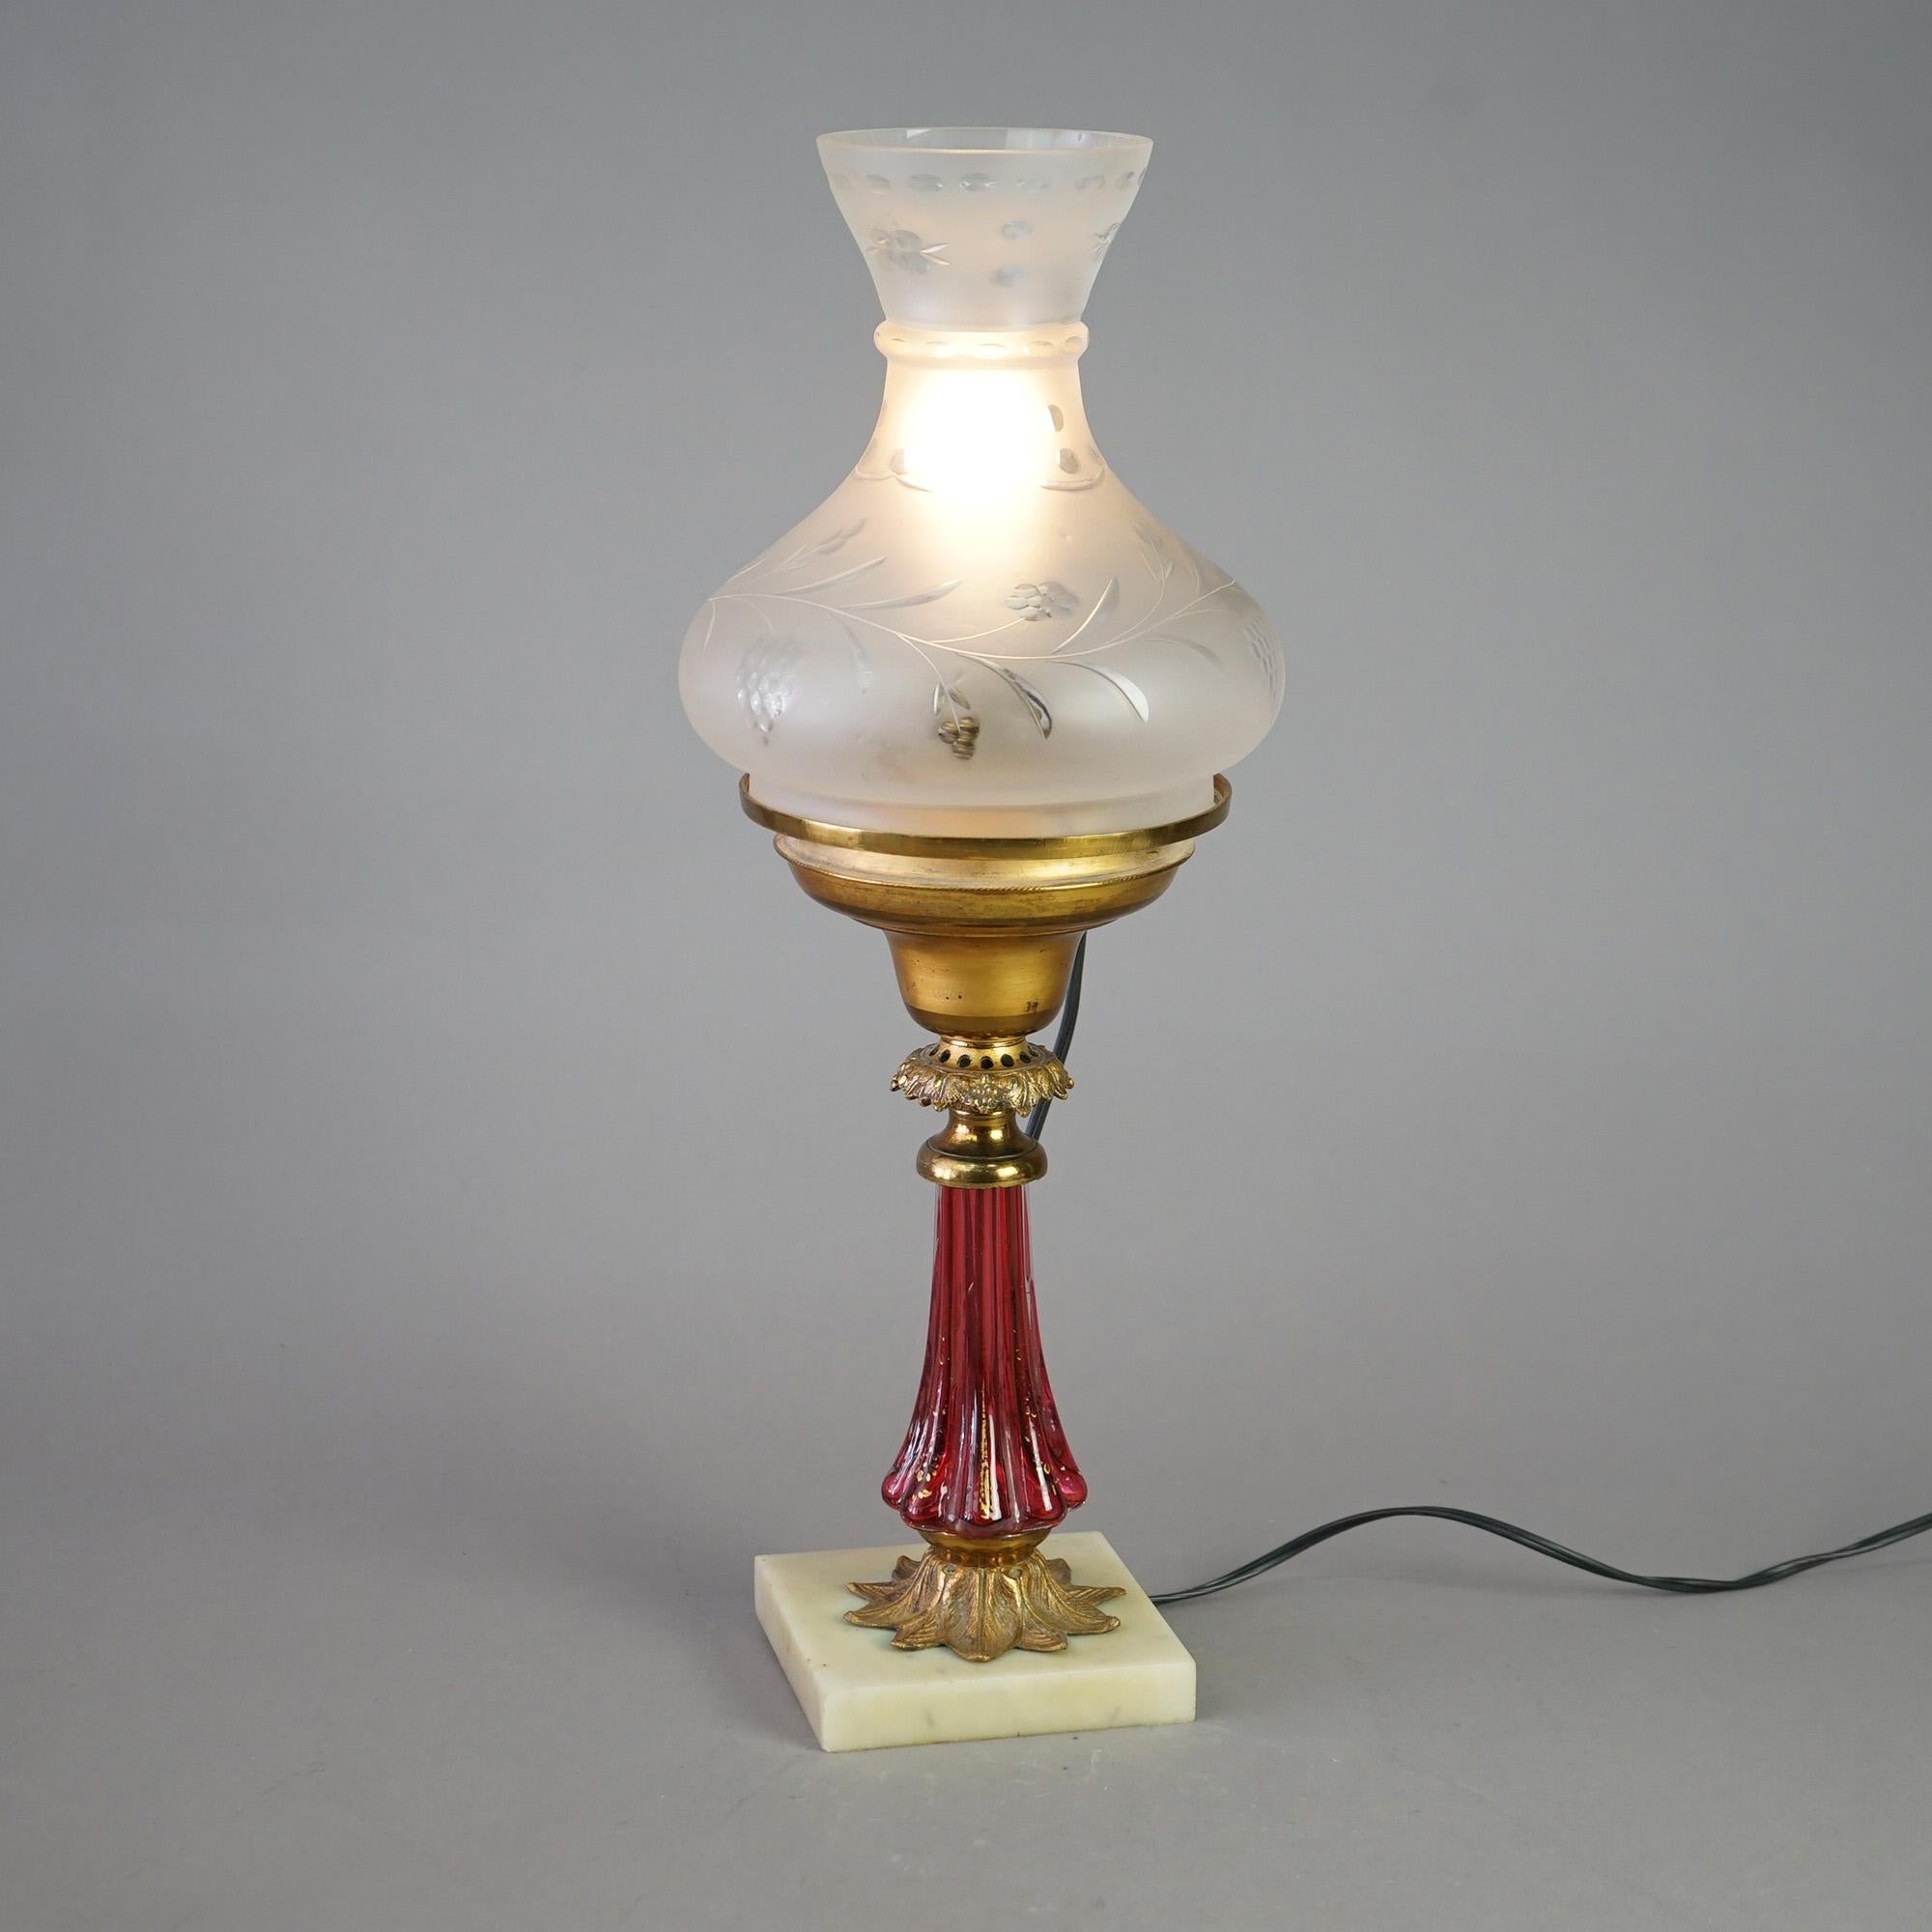 Lampe solaire ancienne à la manière de Cornelius offrant un abat-jour en verre taillé sur une base en verre cranberry sur un pied en marbre, électrifiée, c1850

Dimensions : 20,75''H x 7,5''L x 7,5''P